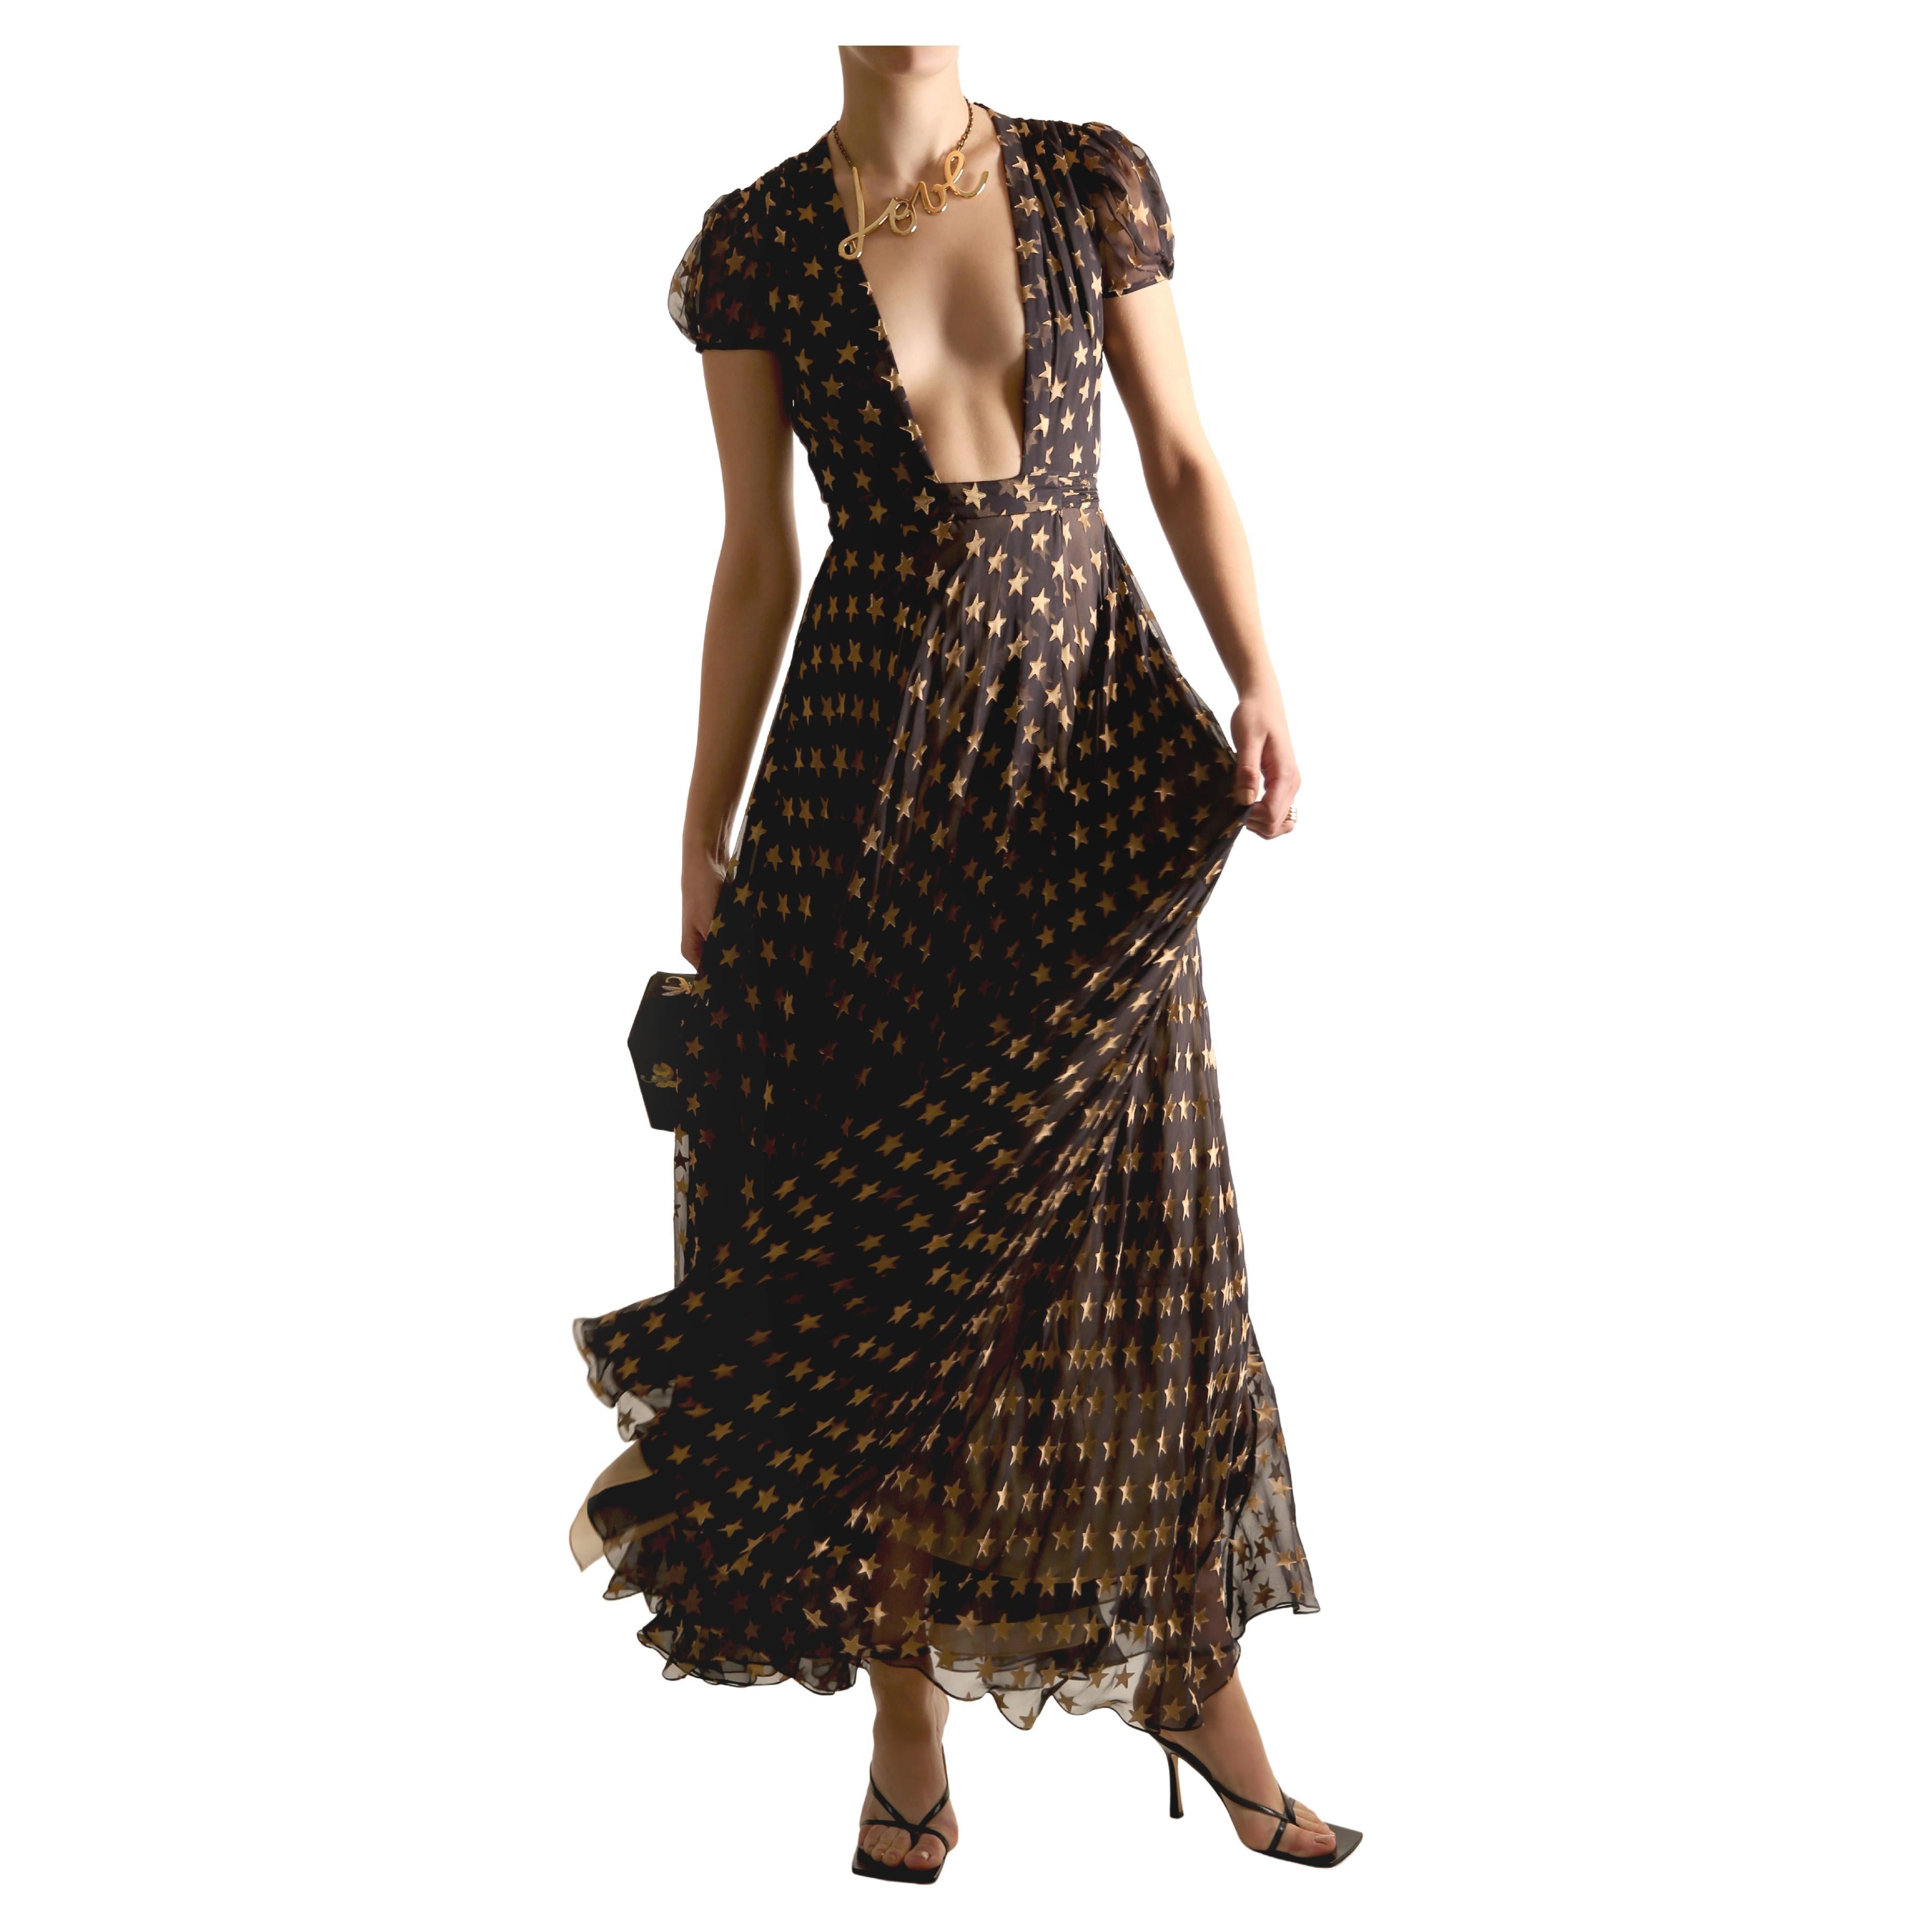 Diane Von Furstenberg Fall 14 silk plunging gold star print layered dress gown